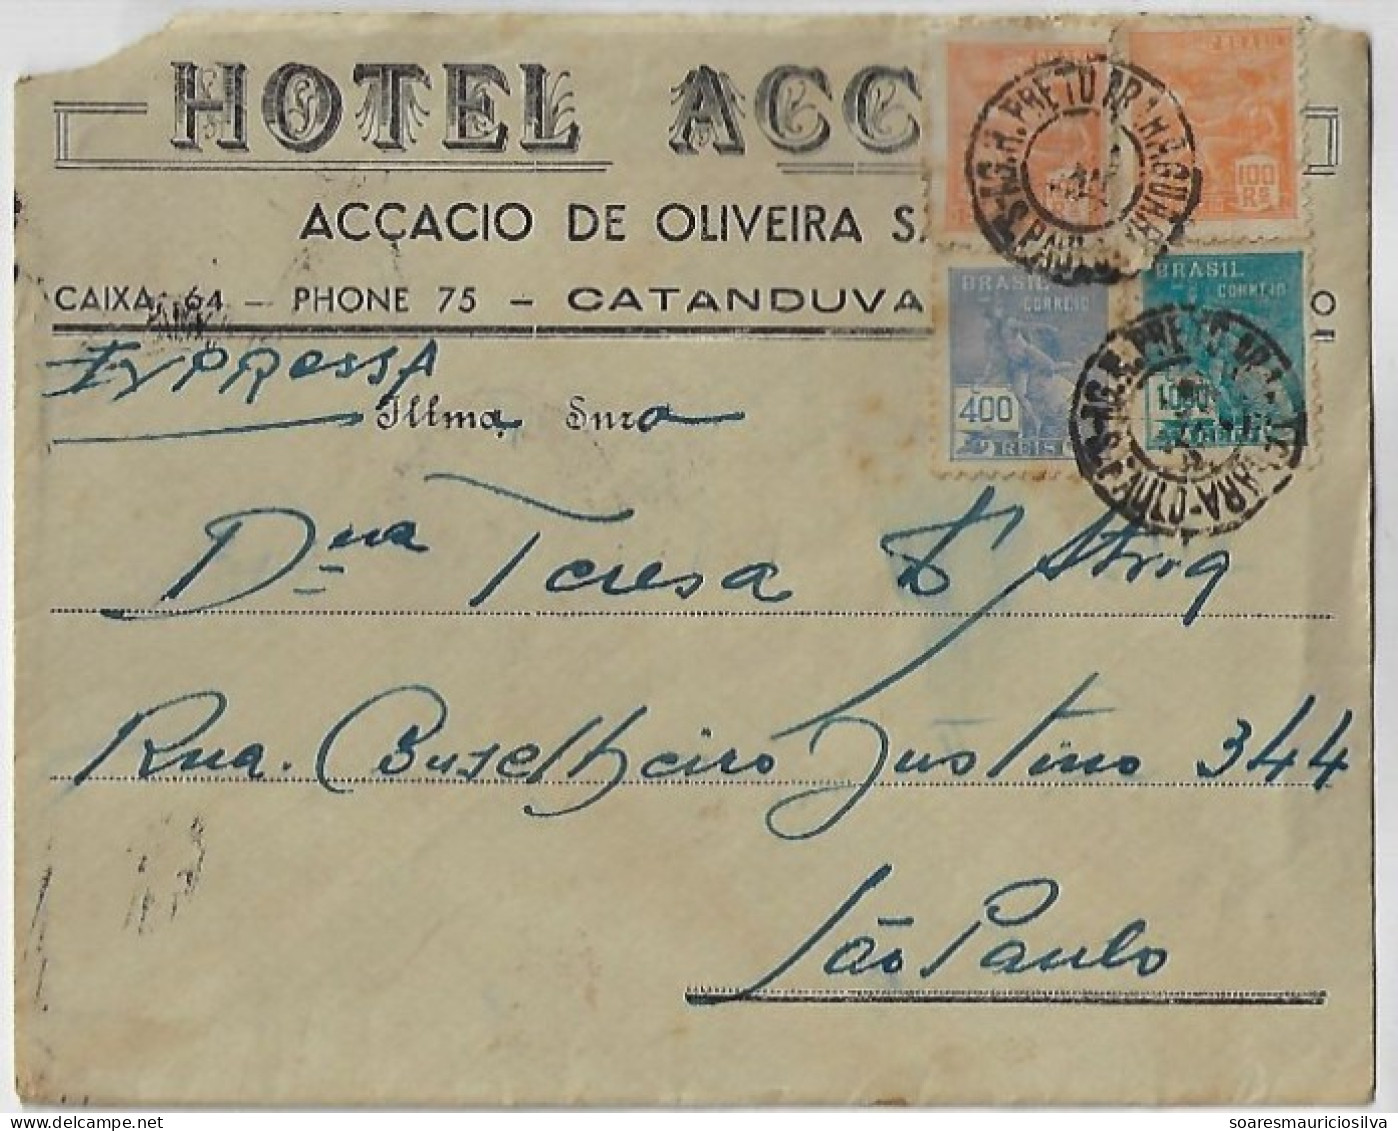 Brazil 1941 Accacio Hotel Express Cover From Catanduvas To São Paulo Railway Cancel Rio Preto X Araraquara 1,600 Réis - Lettres & Documents